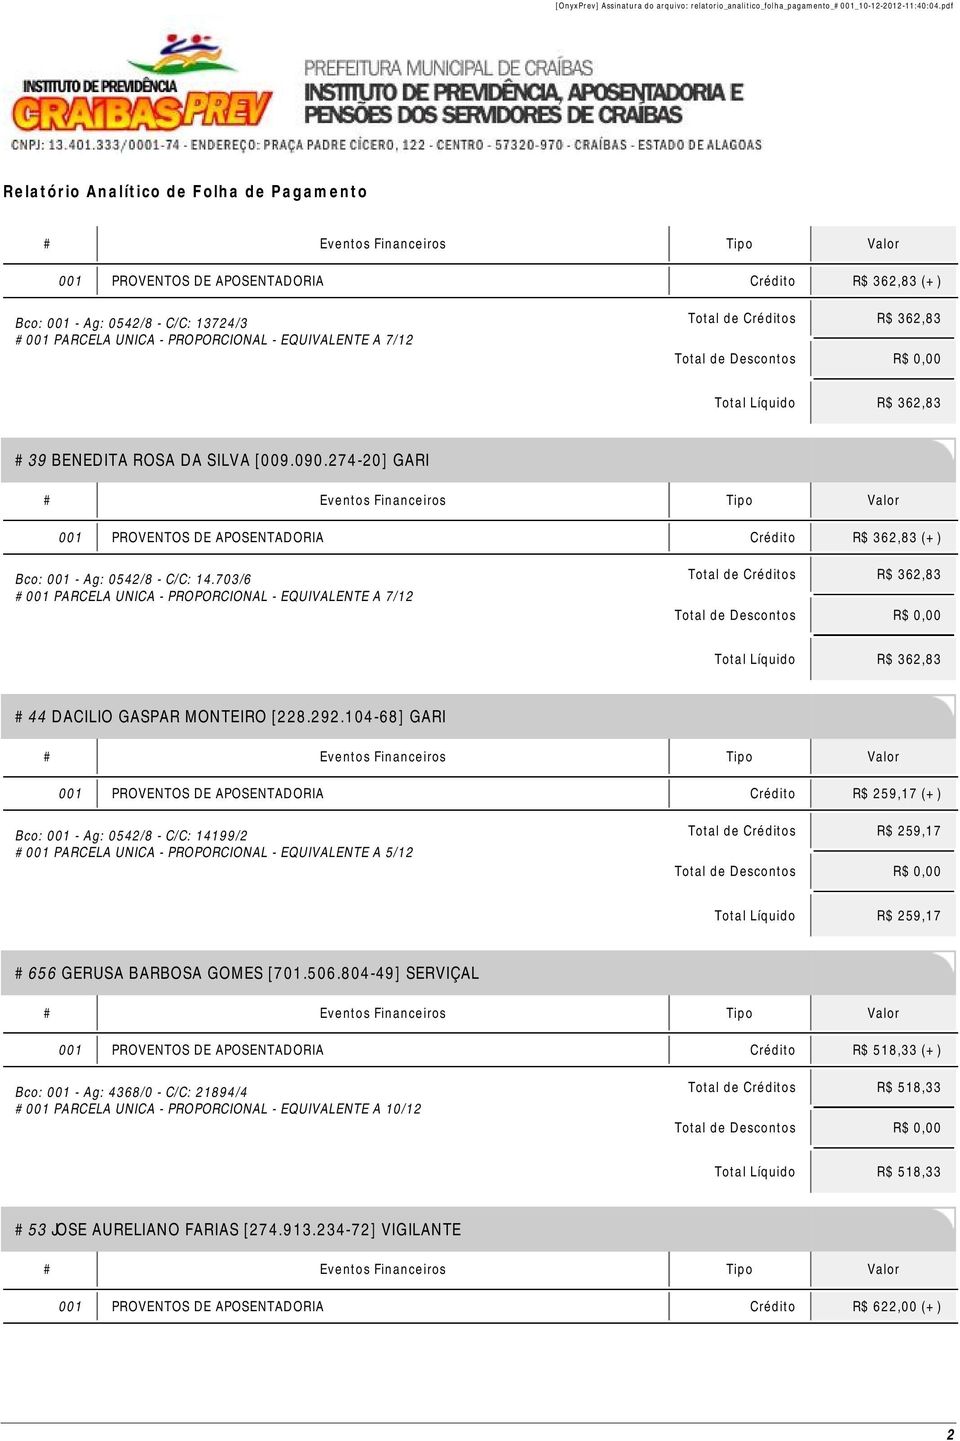 104-68] GARI 001 PROVENTOS DE APOSENTADORIA Crédito R$ 259,17 (+) Bco: 001 - Ag: 0542/8 - C/C: 14199/2 Total de Créditos R$ 259,17 Total Líquido R$ 259,17 #656 GERUSA BARBOSA GOMES [701.506.